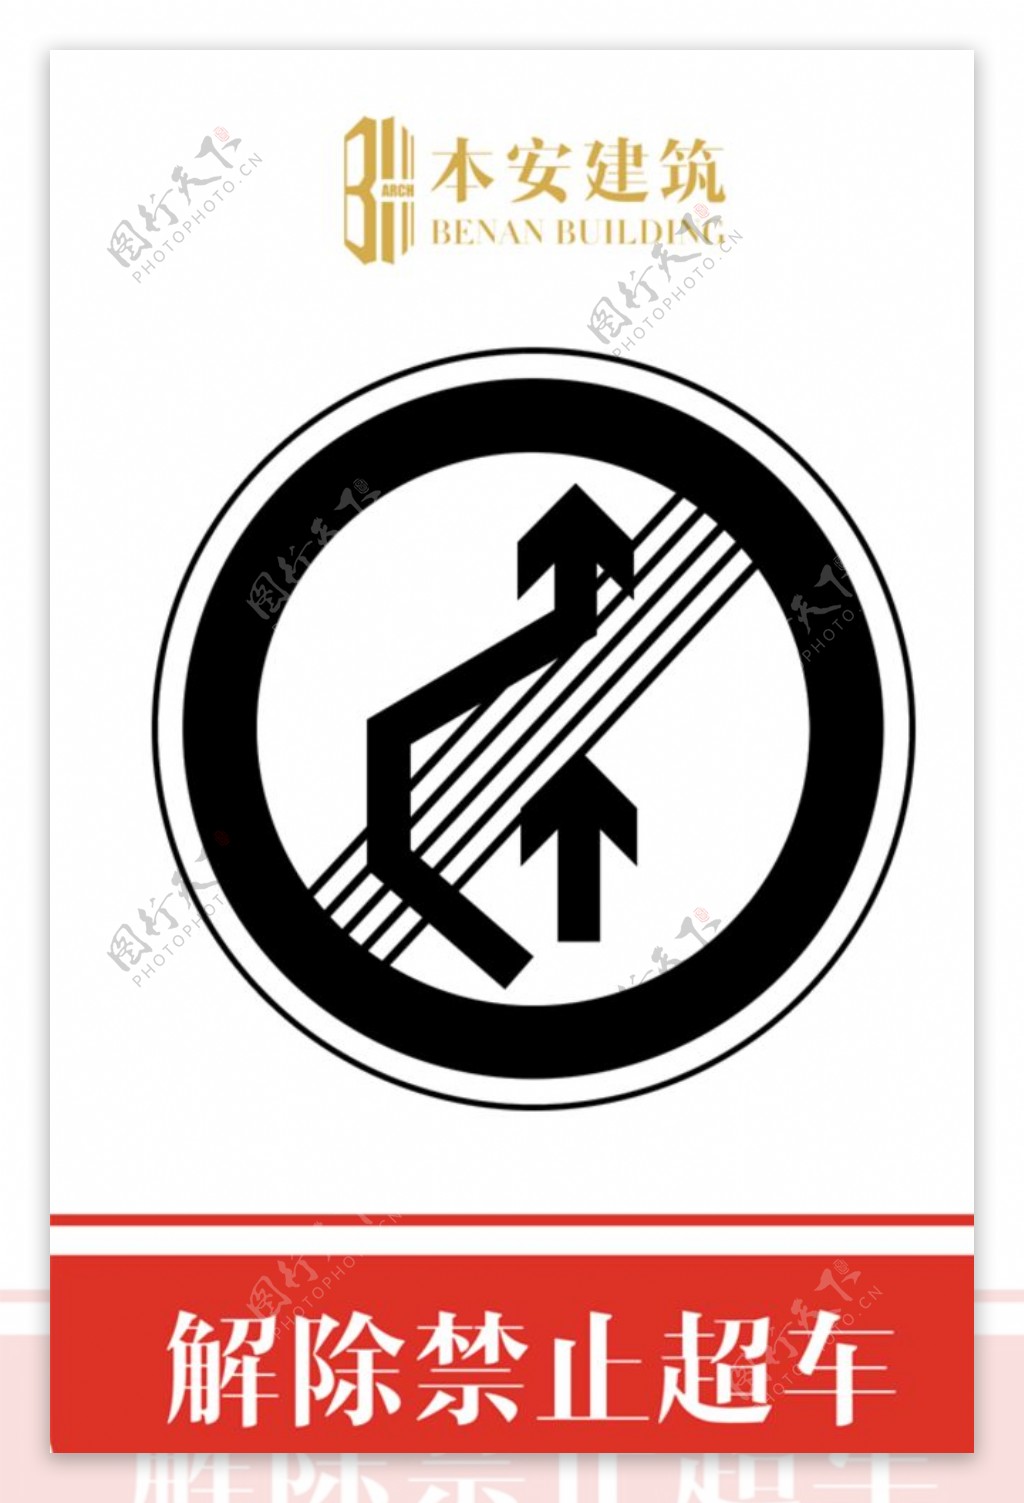 解除禁止超车交通安全文明标识